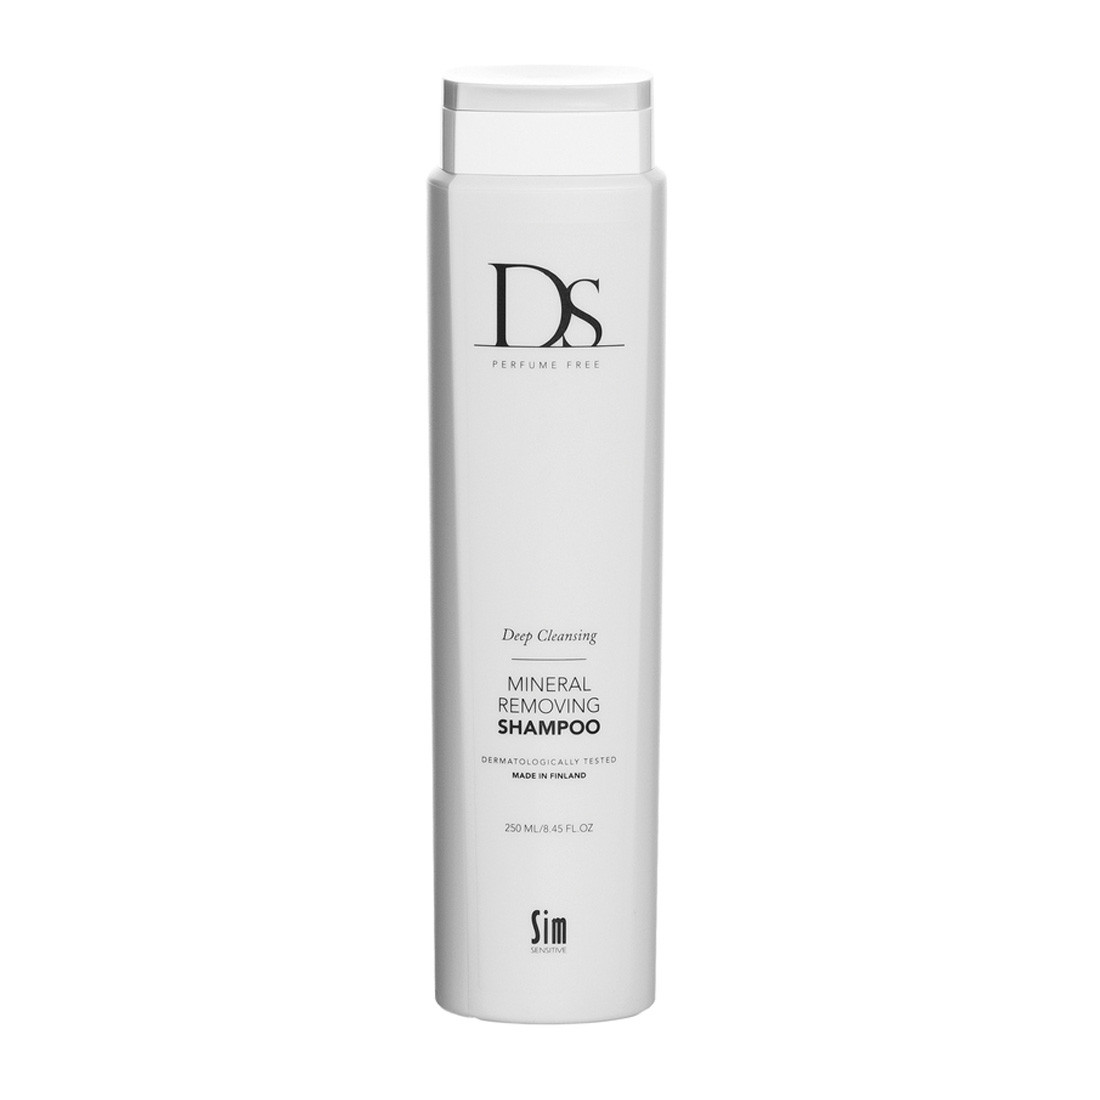 DS Шампунь для глубокой очистки волос от минералов